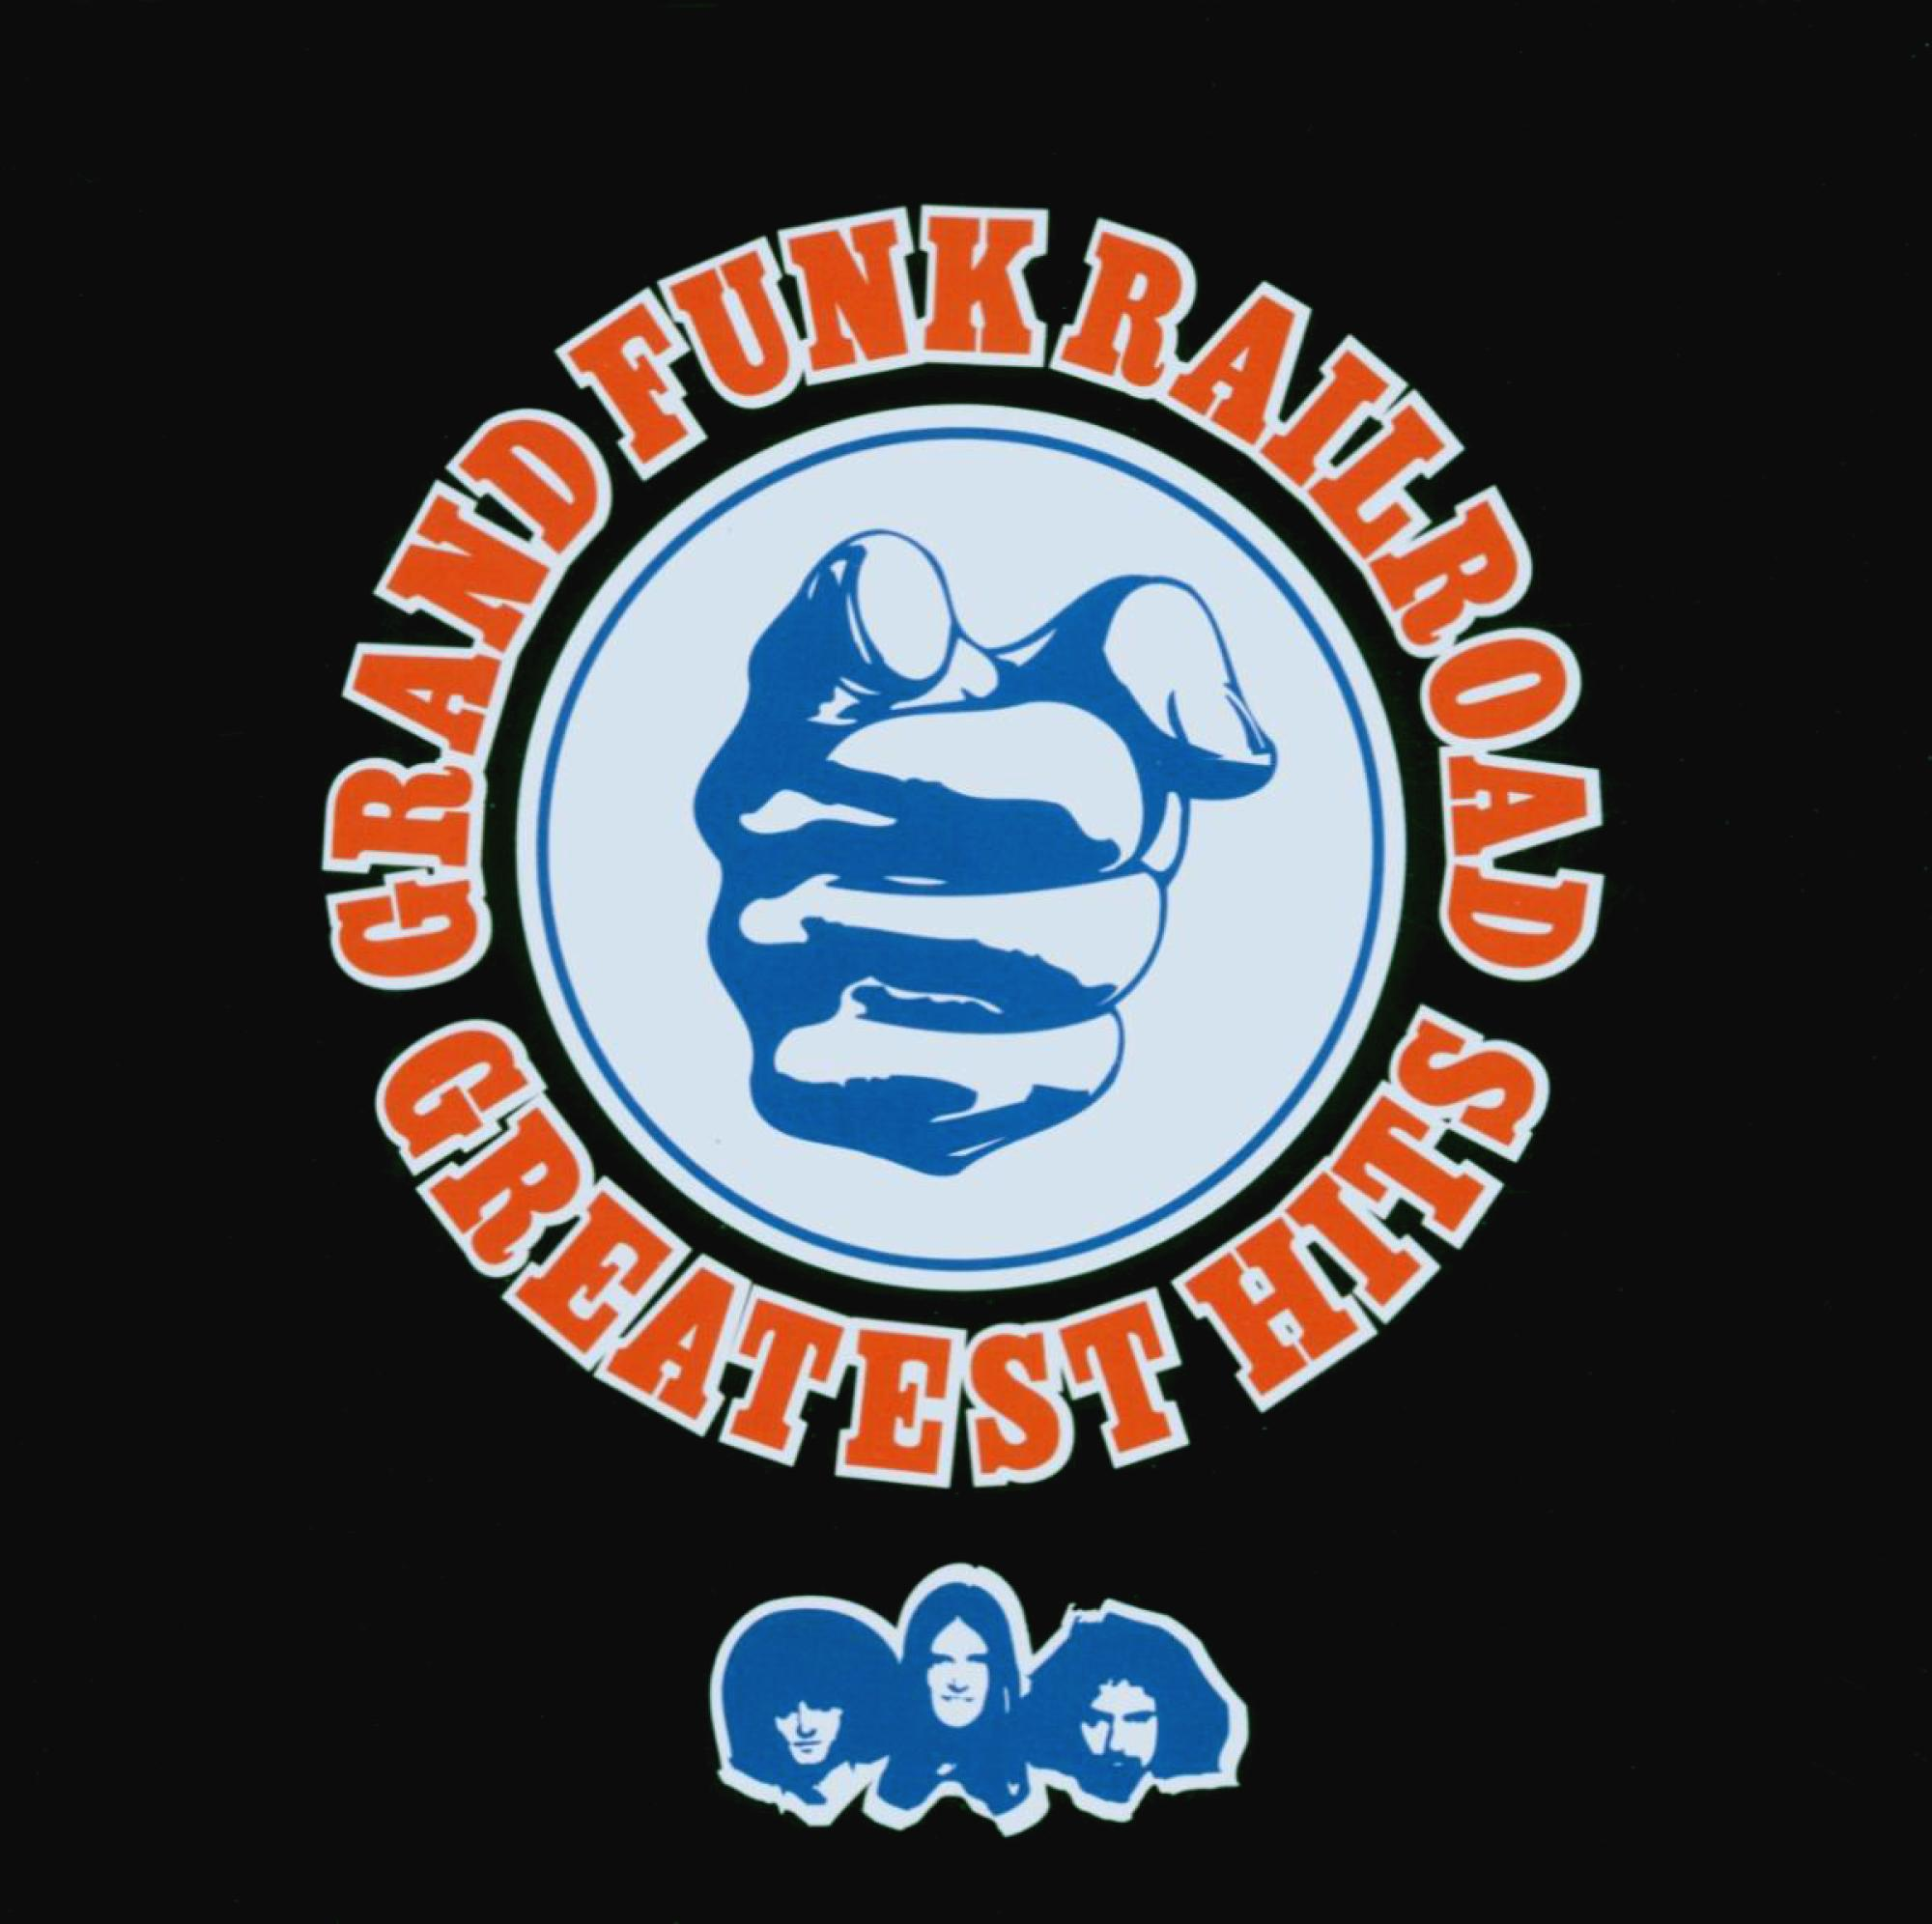 Gr Funk Railroad, Grand Funk - HITS - GREATEST (CD) Railroad